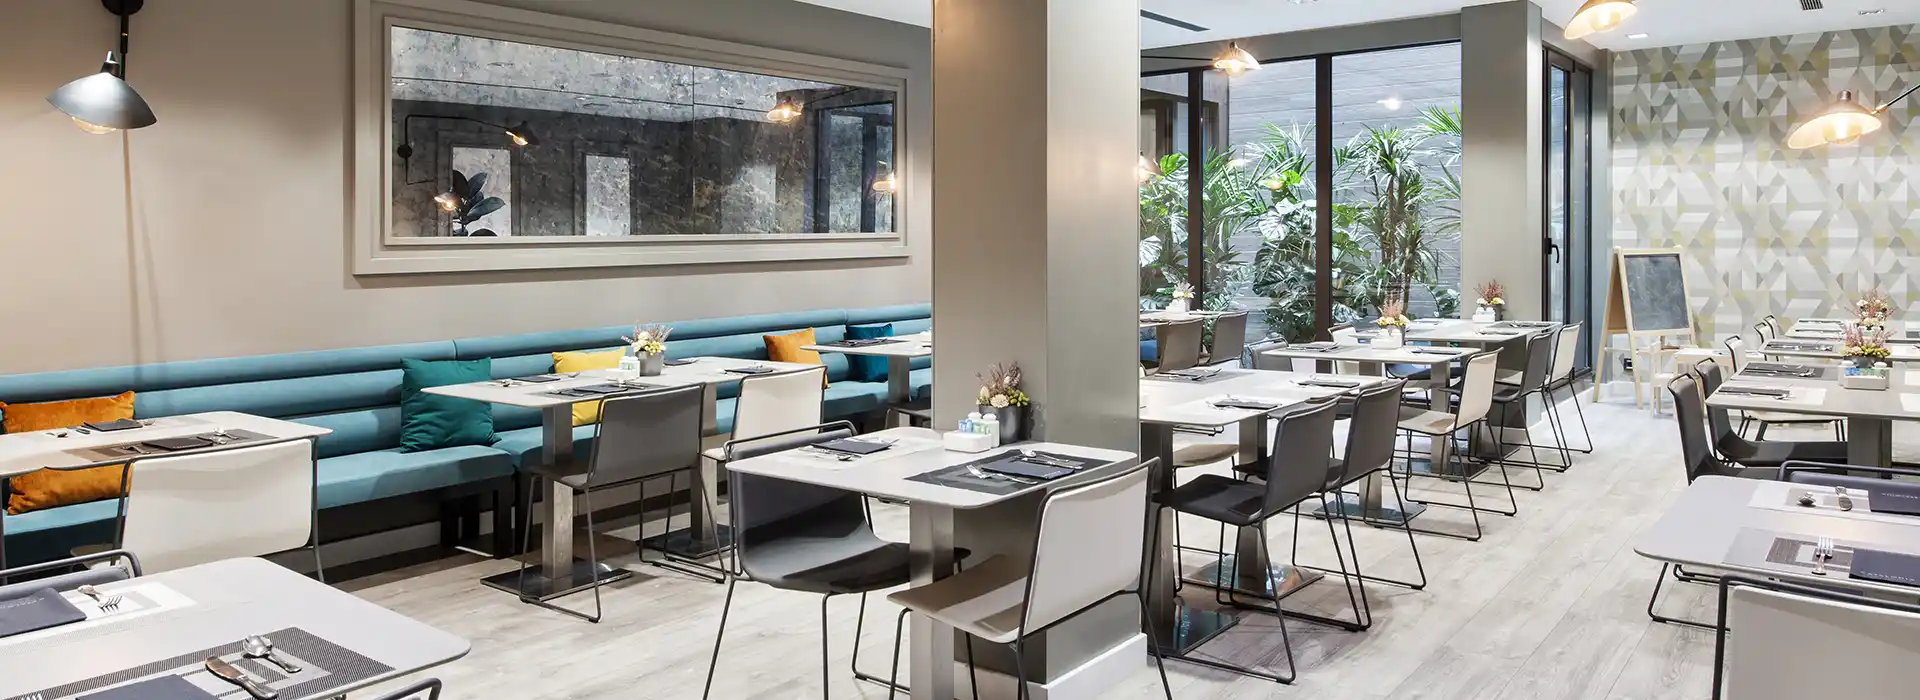 Salón de desayuno en hotel: sillas y mesas minimalistas con bancos azules.